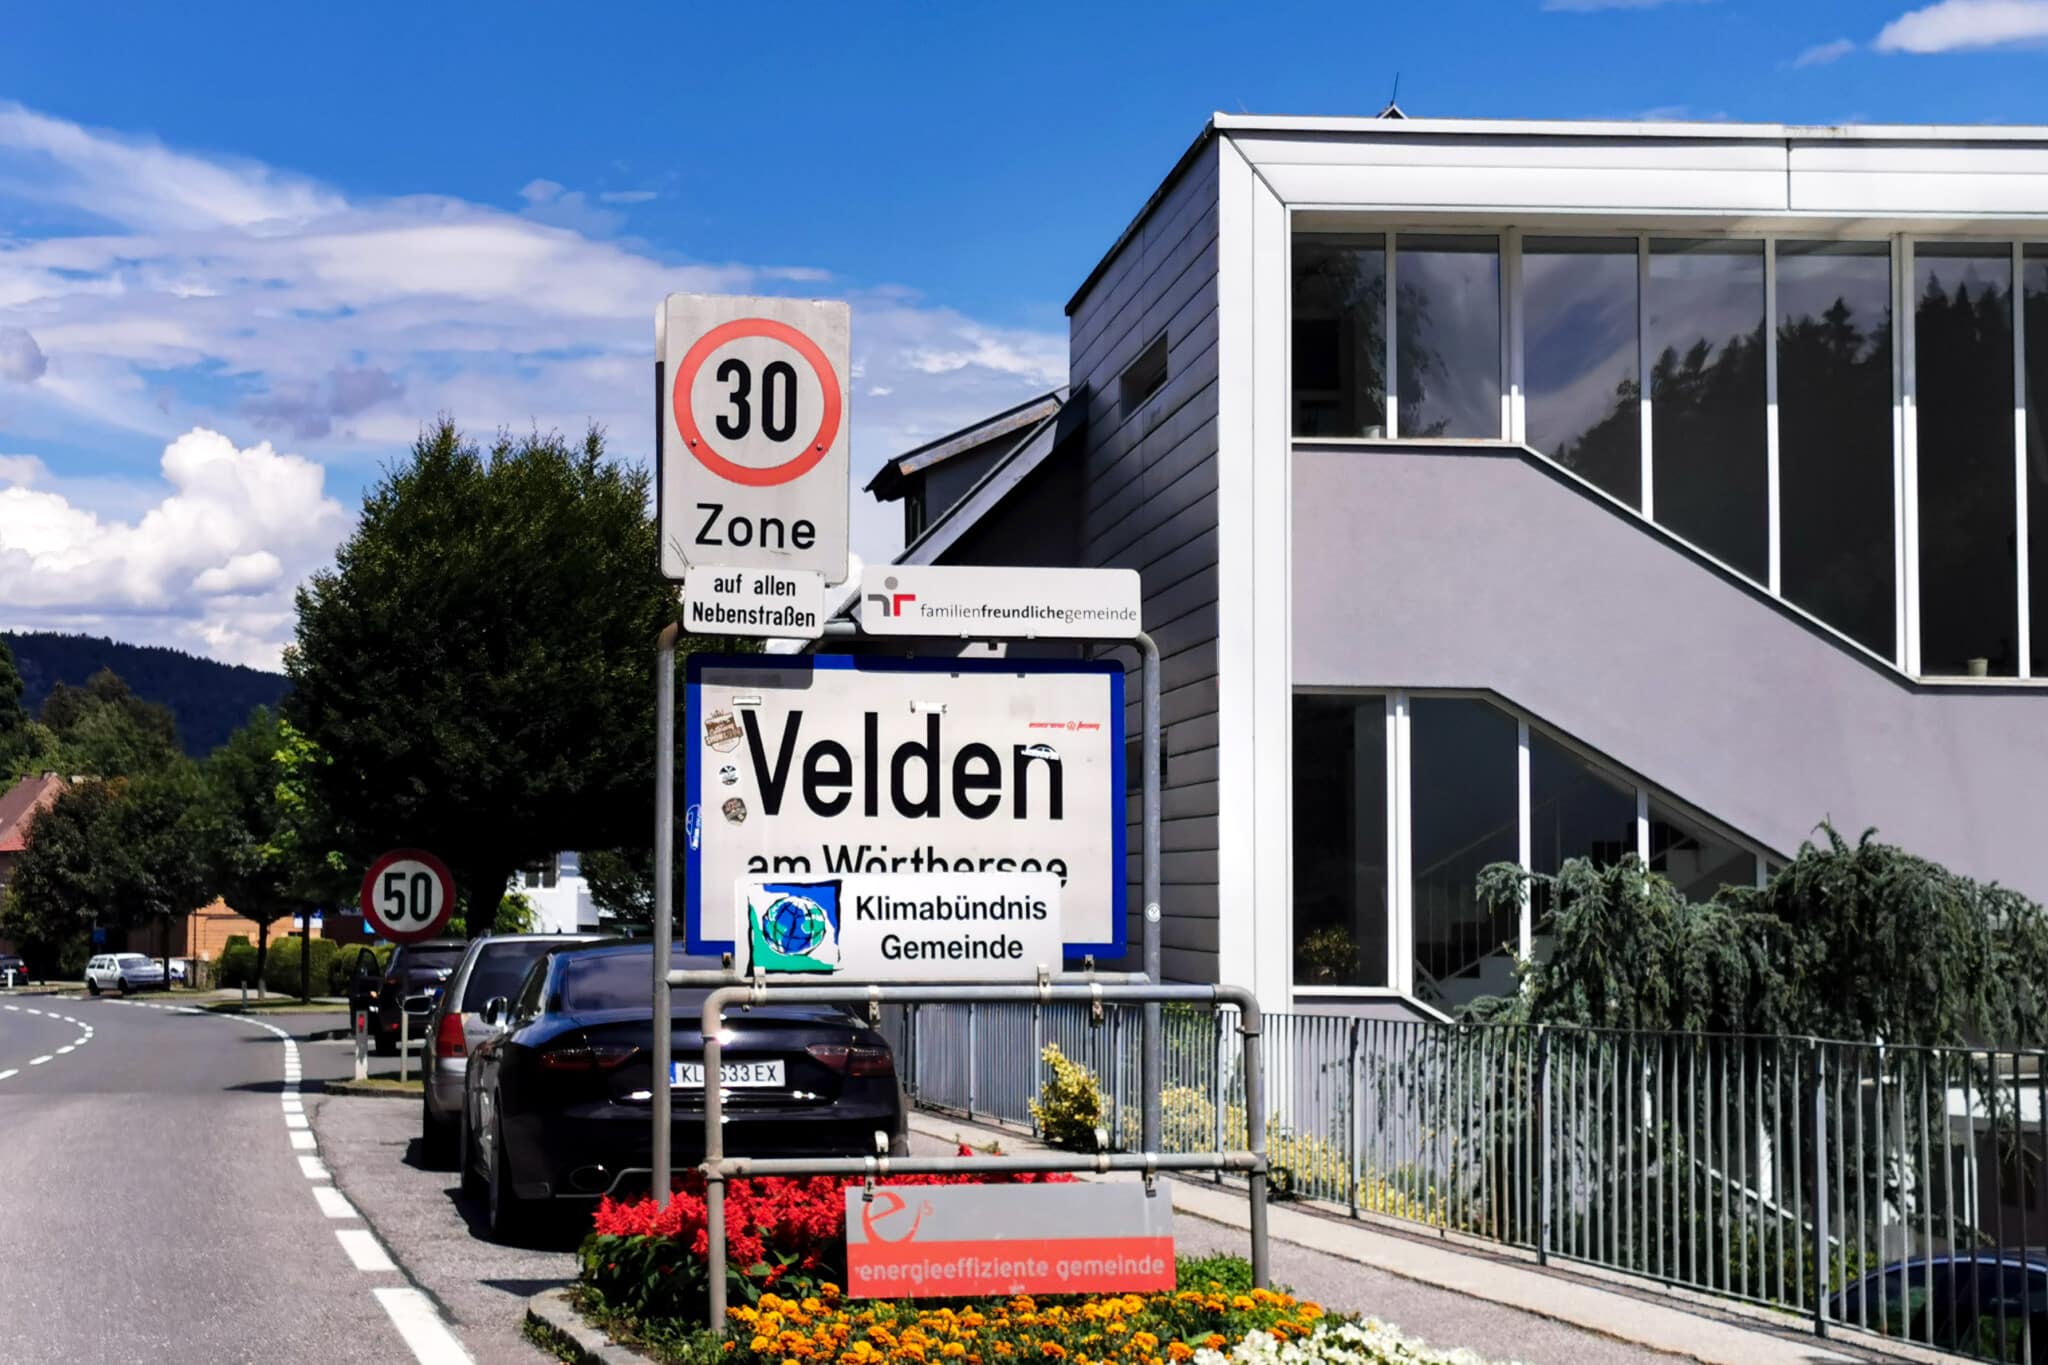 In Velden wurden in der vergangenen Nacht mehrere Verkehrszeichen beschädigt. Außerdem fielen den Tätern noch weitere Gegenstände zum Opfer.